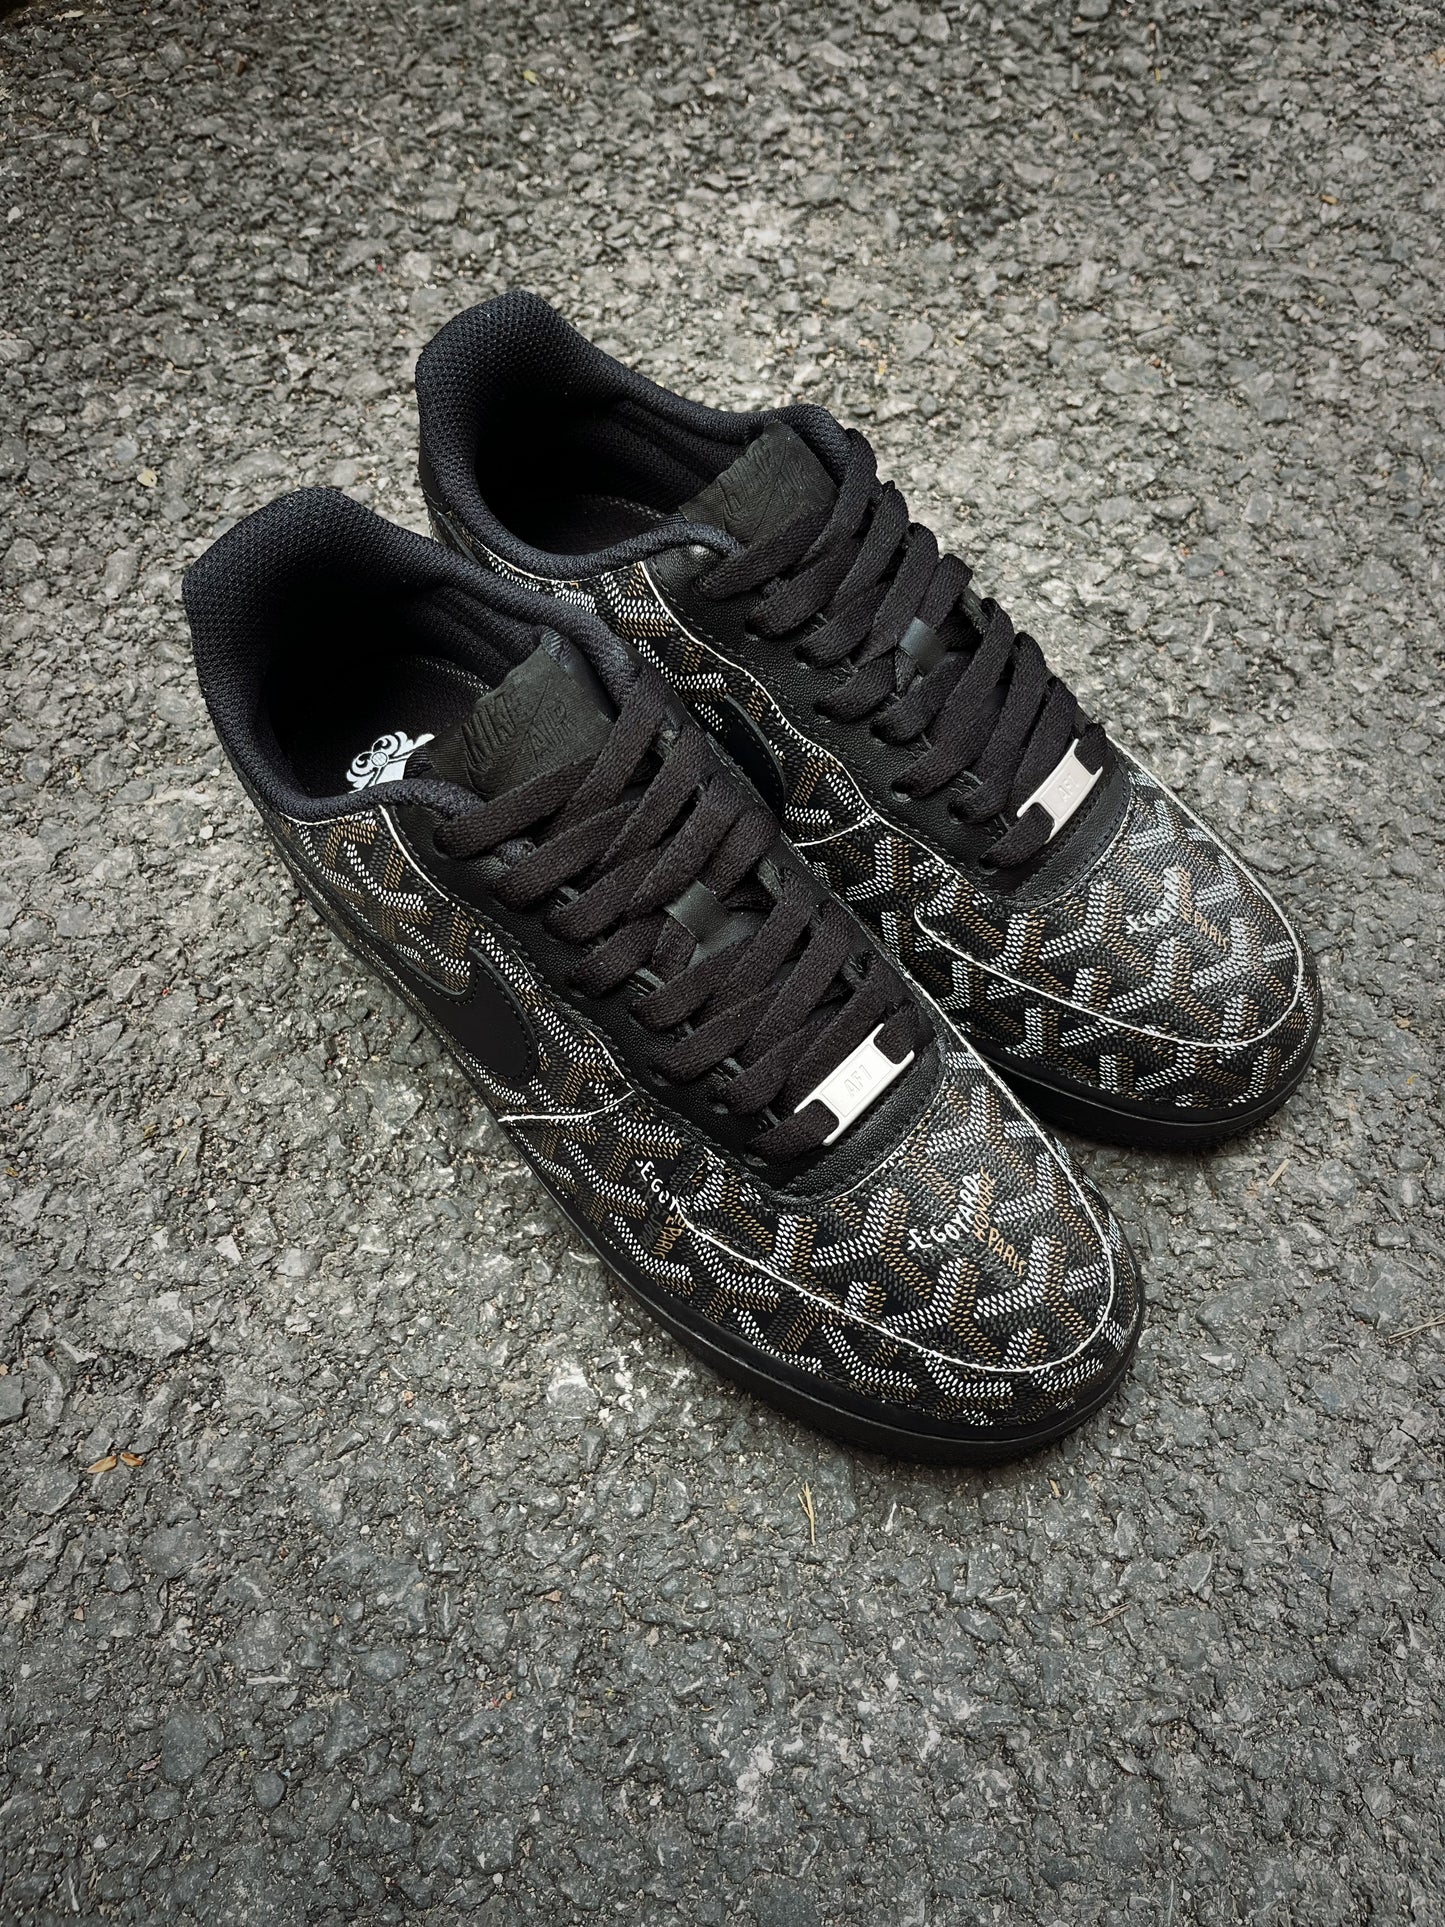 Black Full LV Leather Air Force One Custom Sneaker for Man